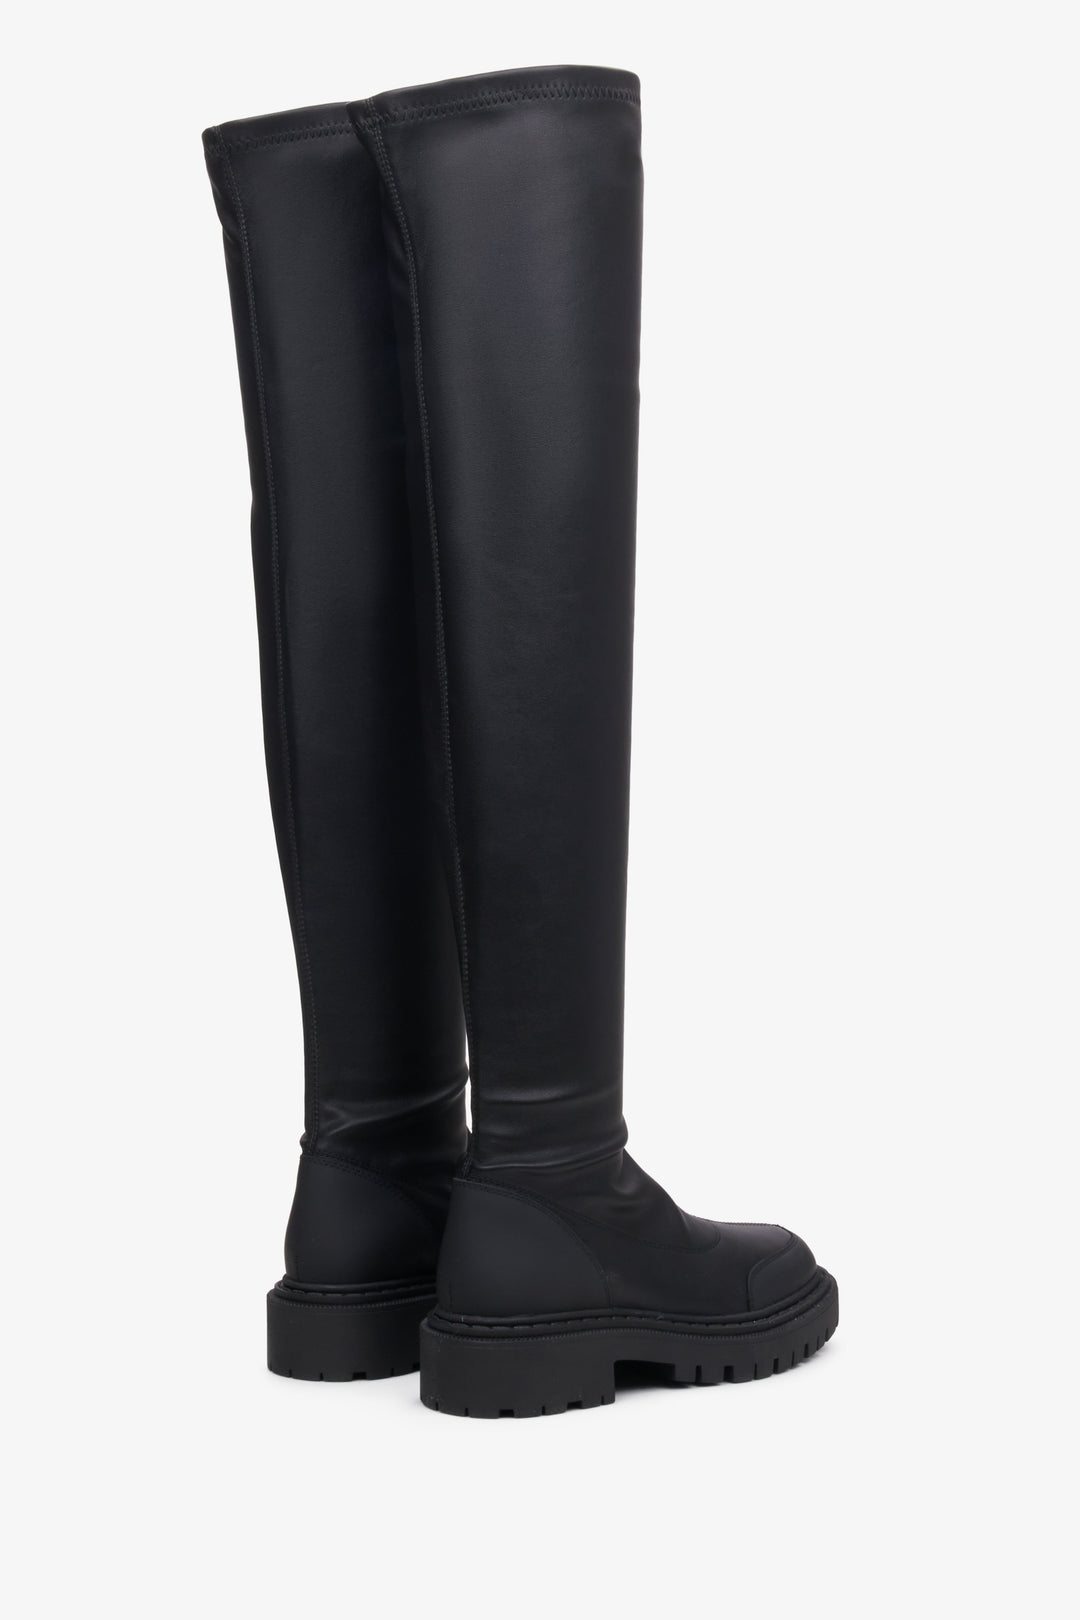 Skórzane, czarne, wysokie kozaki damskie Estro z elastyczną cholewą - zbliżenie na tył i linię boczną butów.